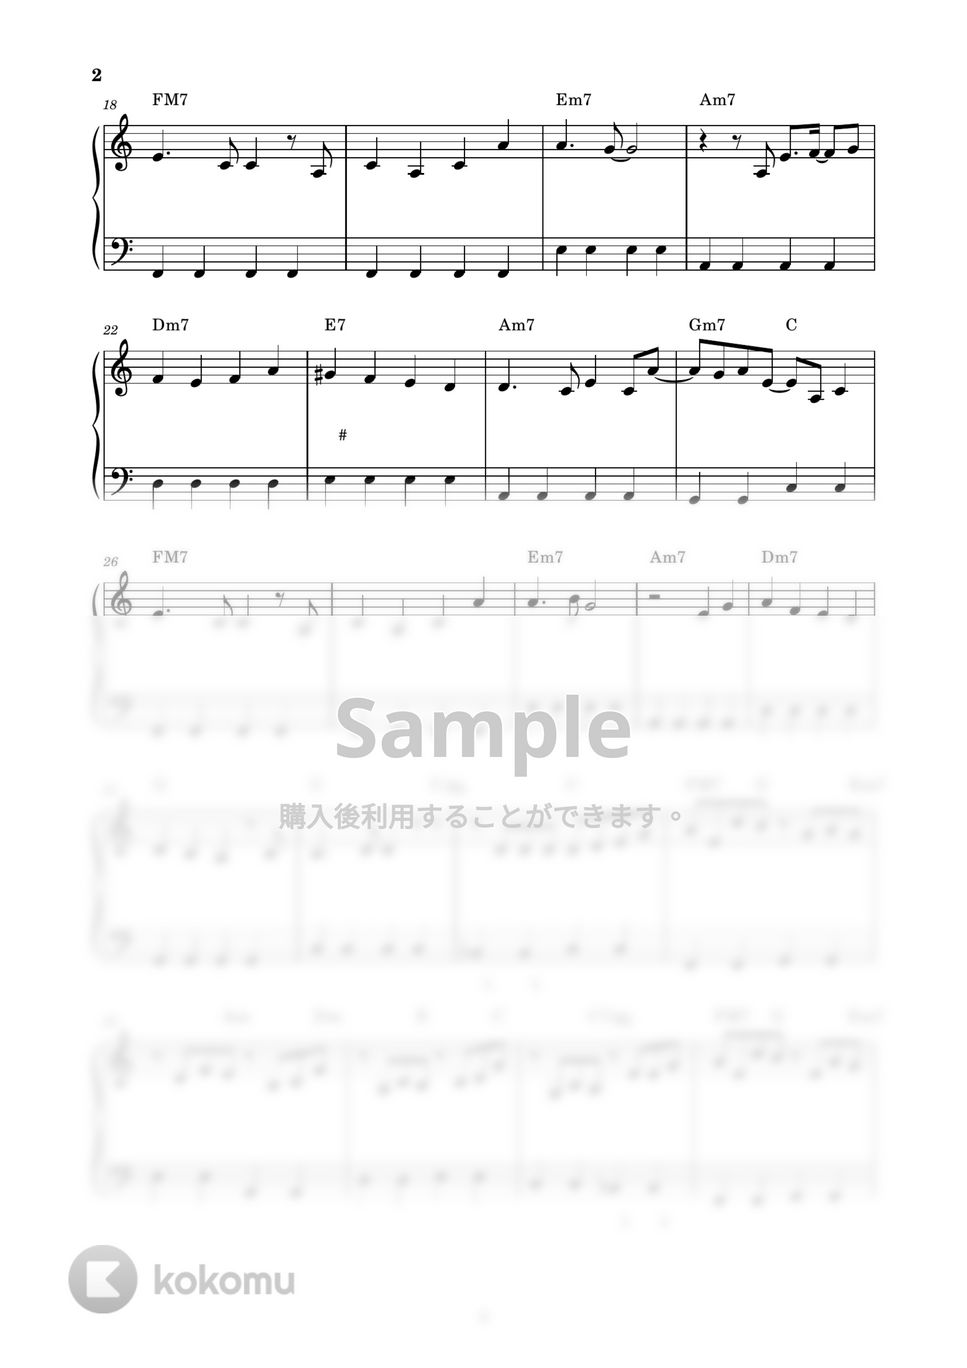 YOASOBI - 祝福 (ピアノ楽譜 / かんたん両手 / 歌詞付き / ドレミ付き / 初心者向き) by piano.tokyo